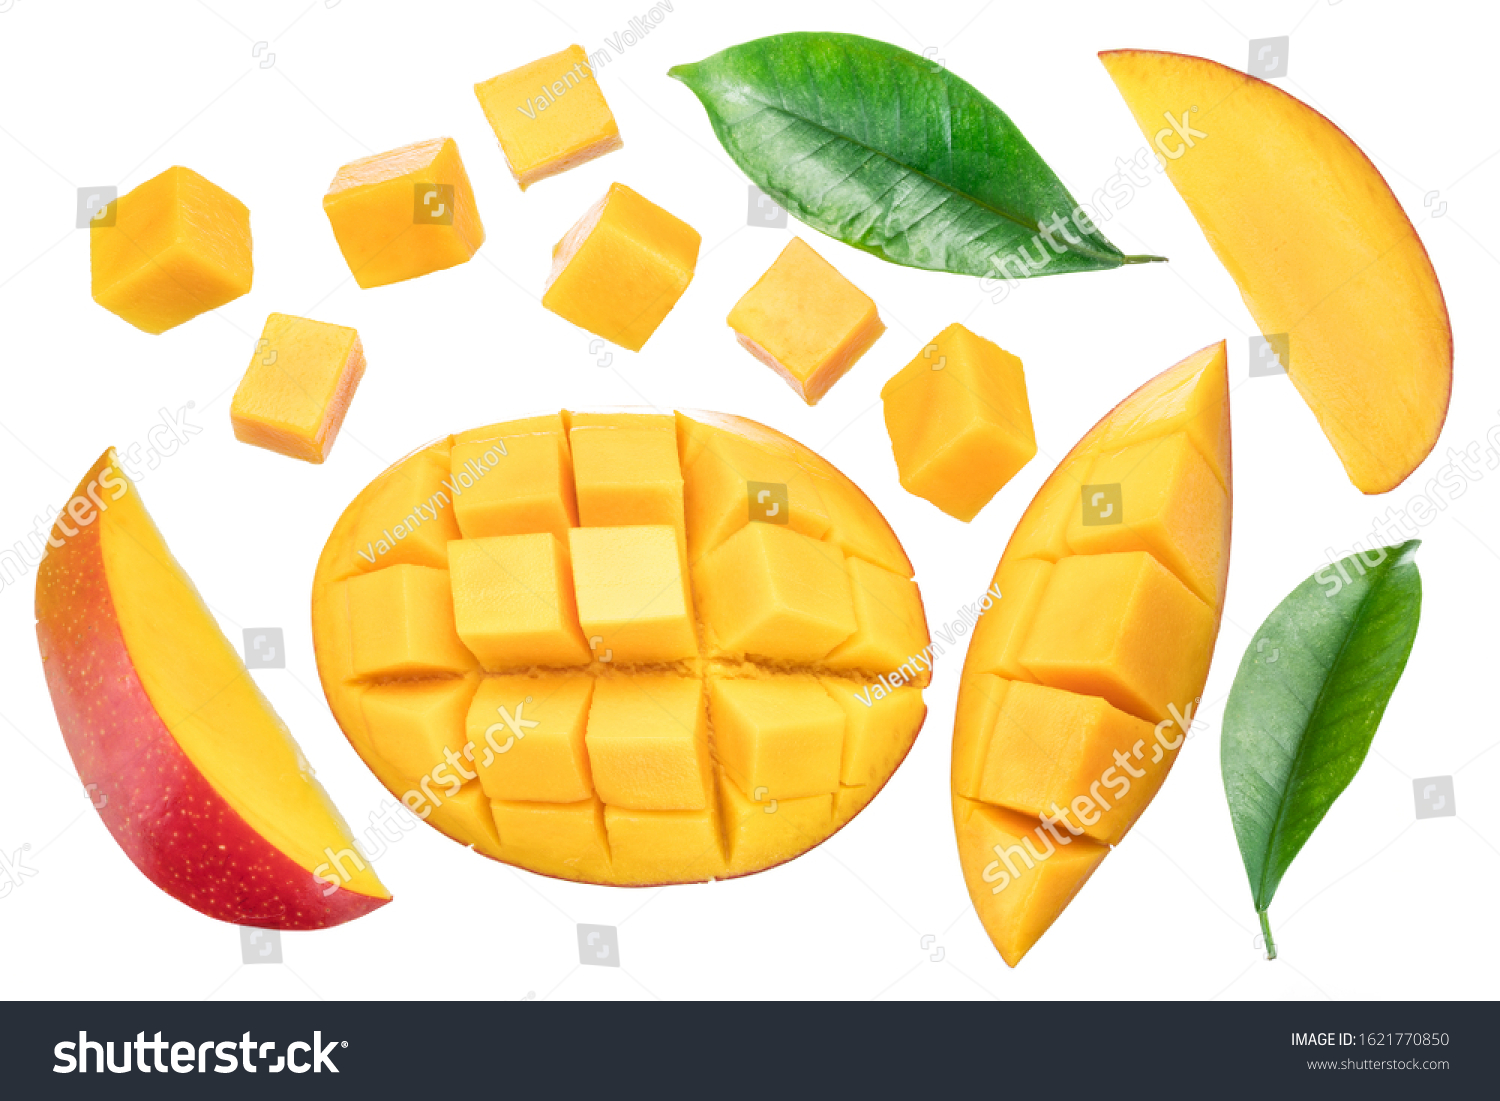 Set of mango cubes and mango slices isolated on a white background. #1621770850